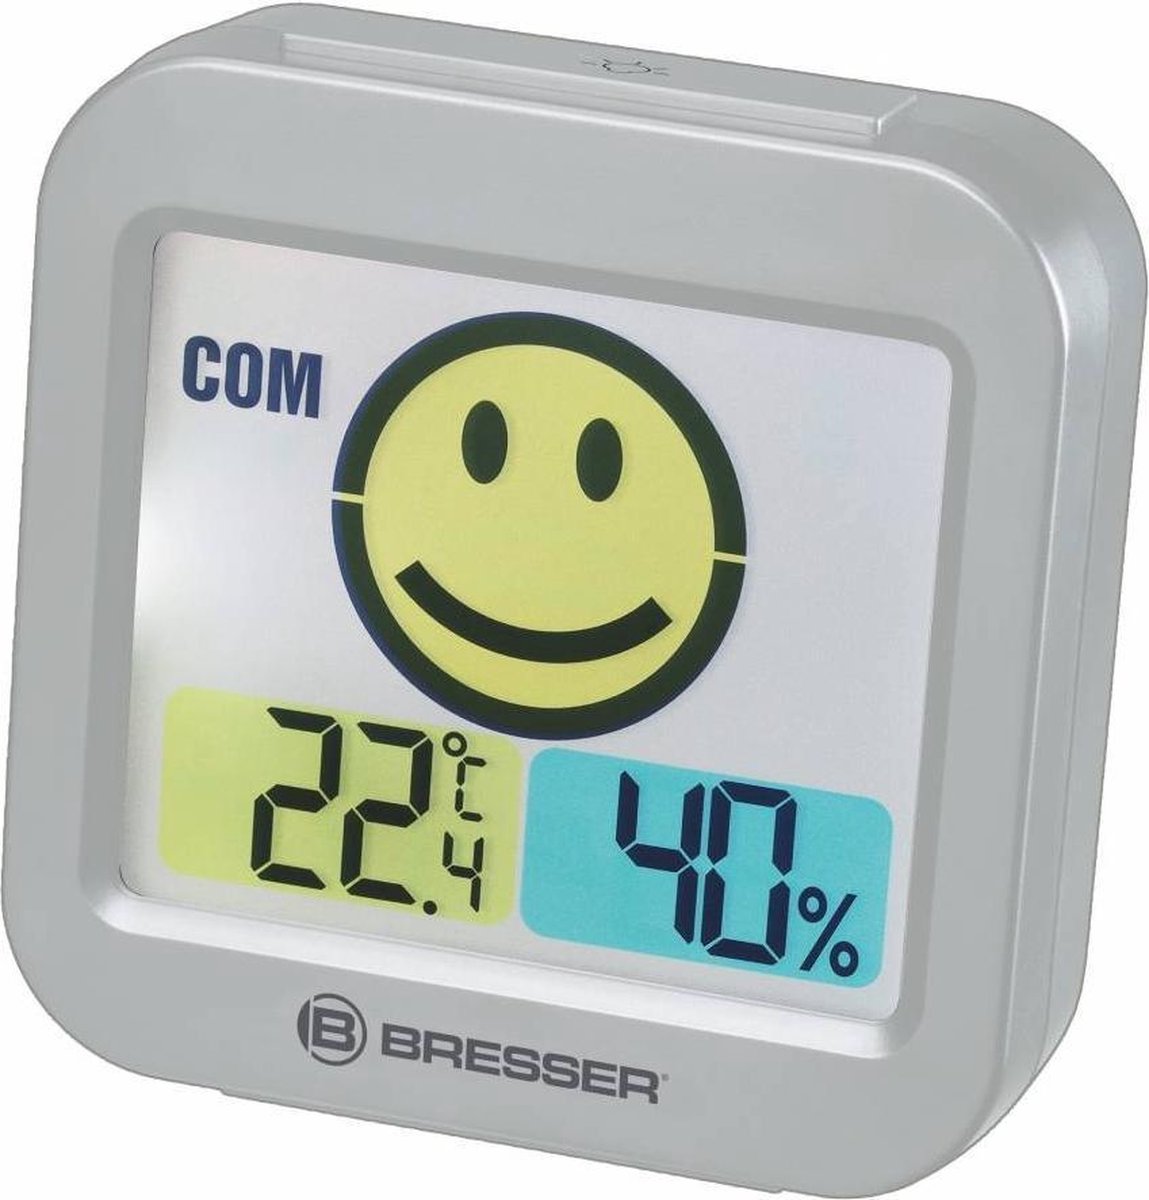 Bresser Temeo Smile Thermomètre hygromètre avec indicateur de température ambiante pour prévenir les moisissures Blanc 